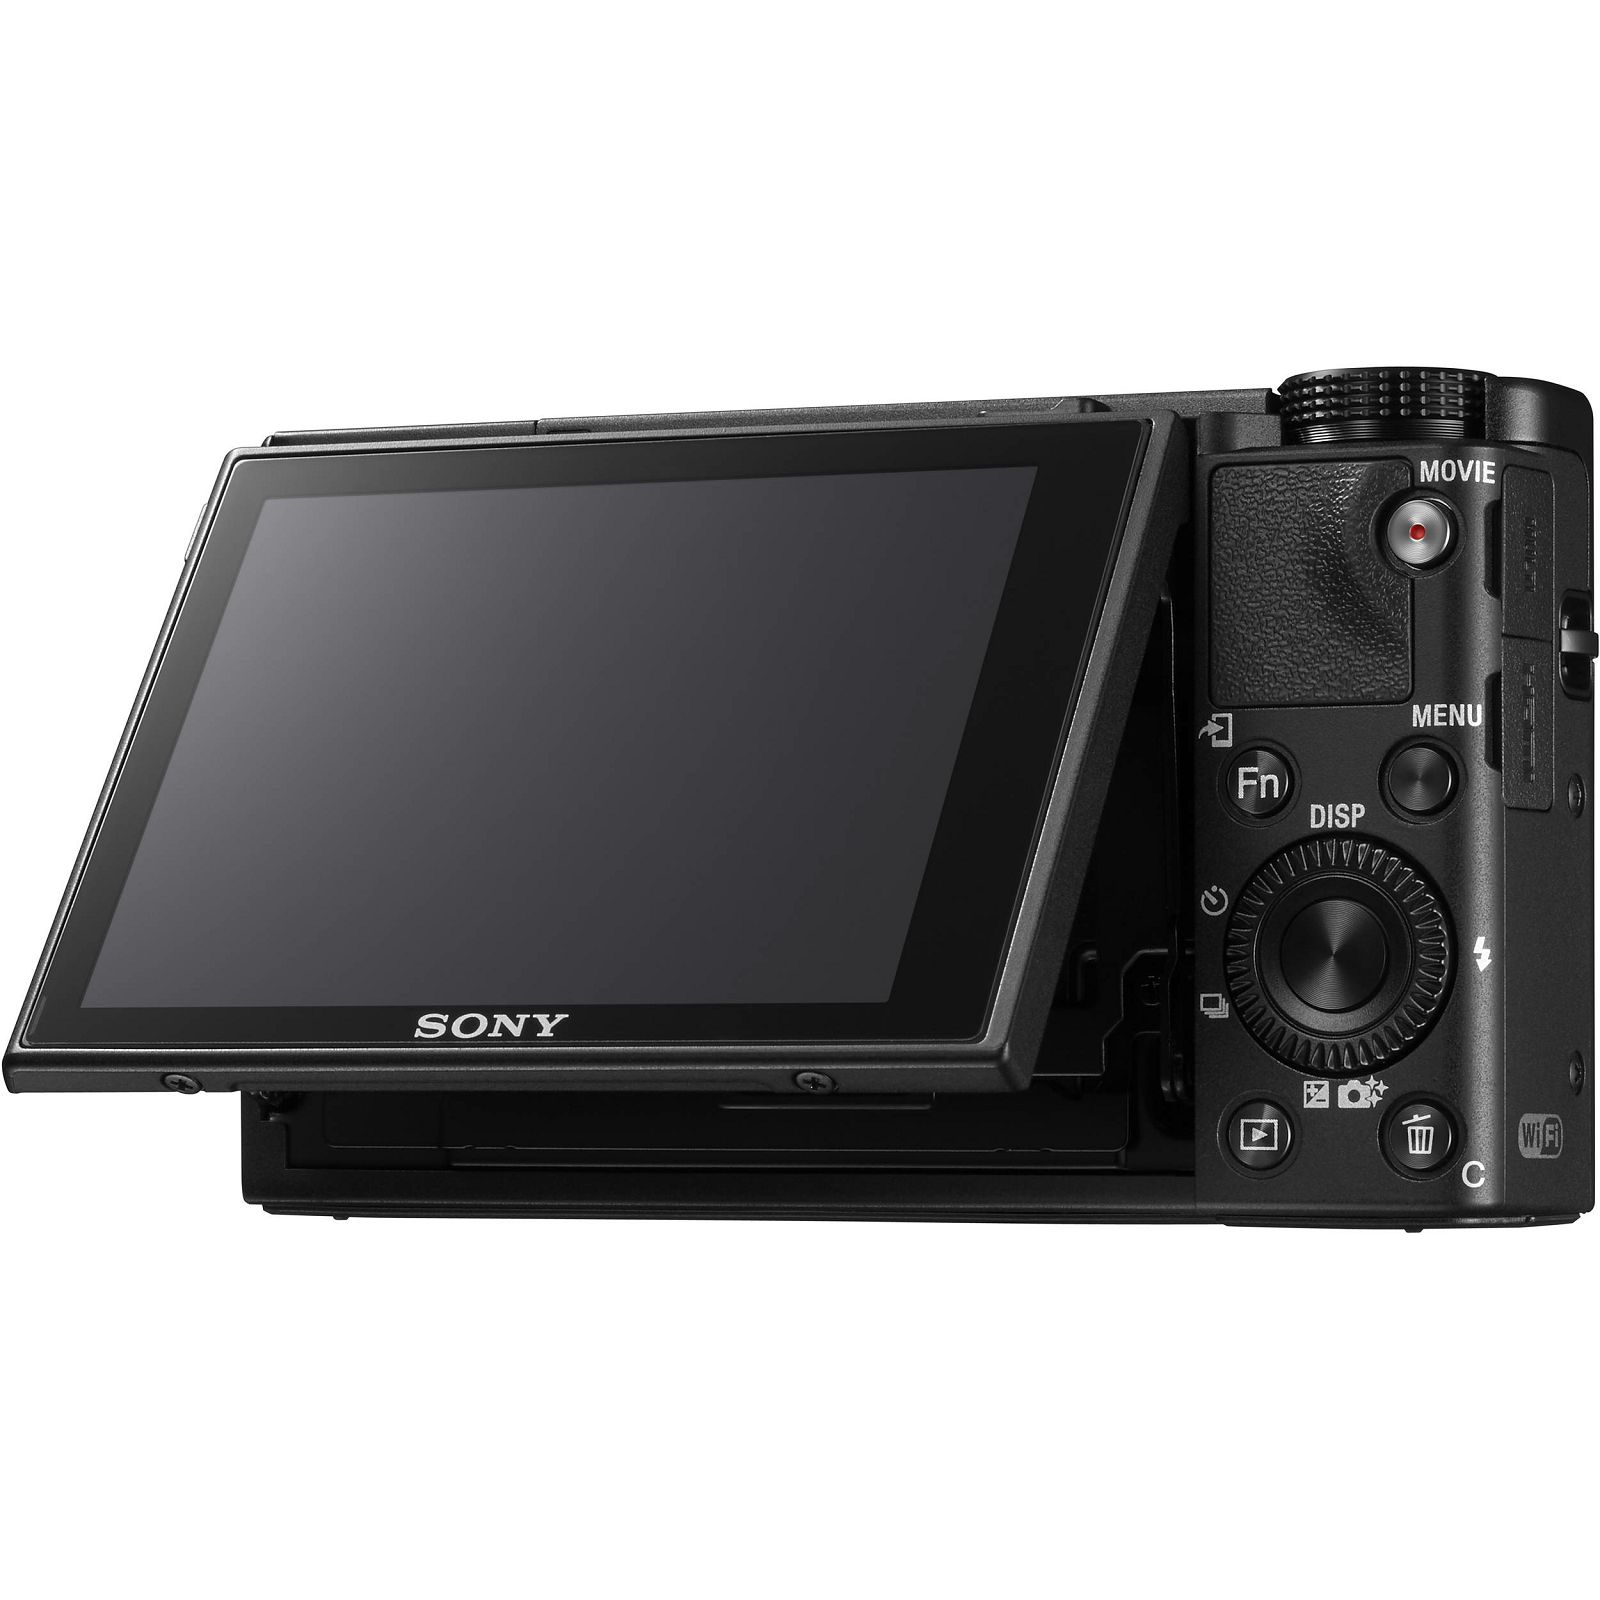 Sony Cyber-shot DSC-RX100 M5 Black crni Digitalni fotoaparat s integriranim objektivom Carl Zeiss Vario-Sonnar T* 10.4-37.1mm f/1.8-4.9 Digital Camera RX100 V RX-100 DSCRX100M5 20.2Mp (DSCRX100M5.CE3)